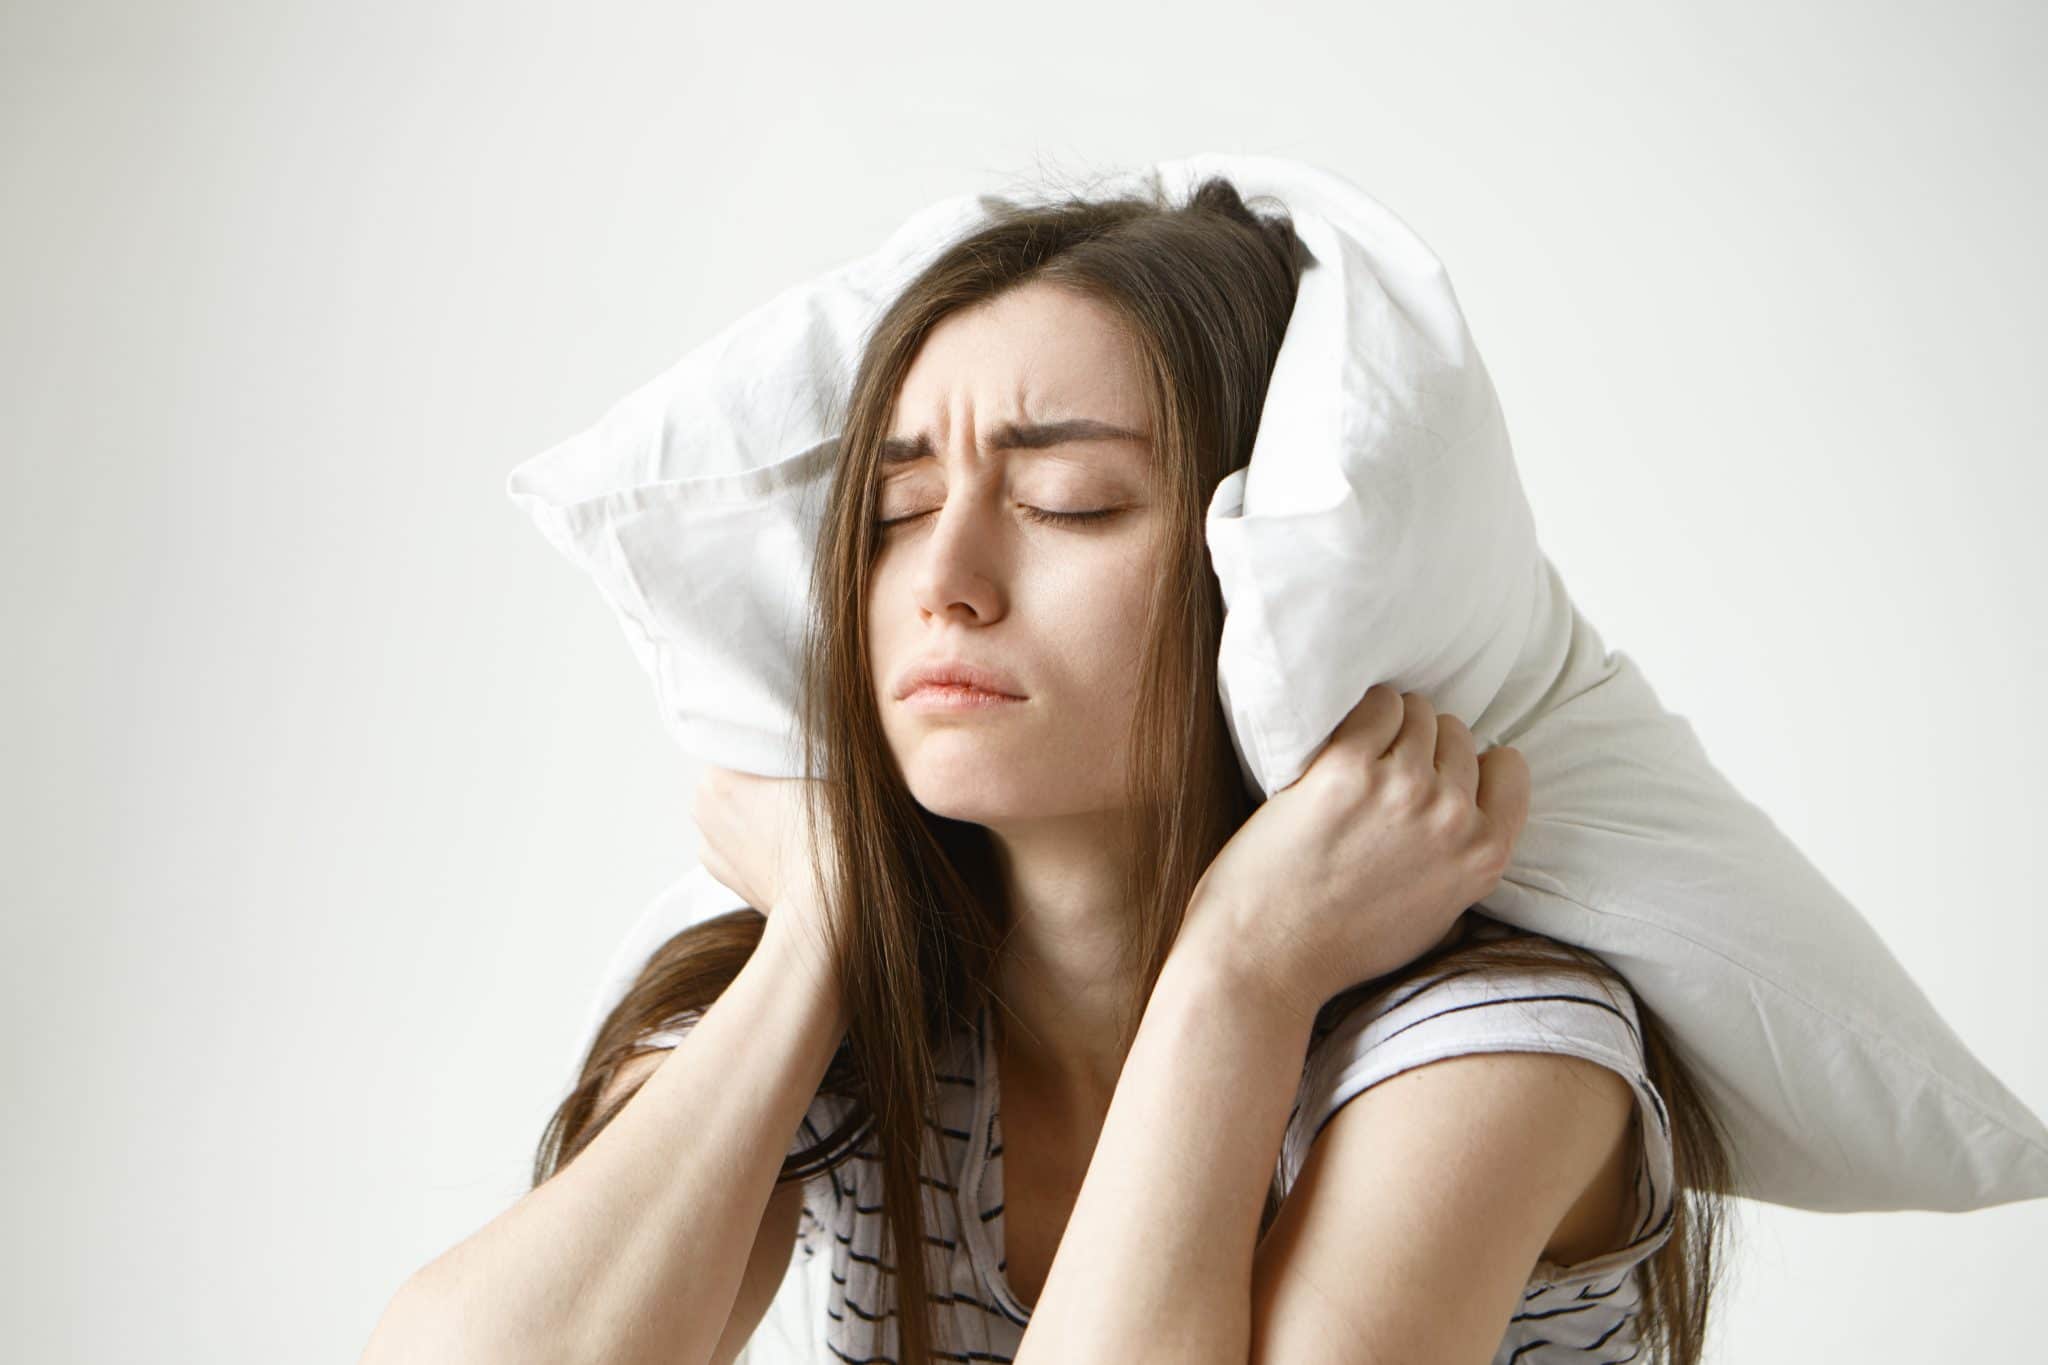 รวม 6 ผลเสียการอดนอน เมื่ออดนอนไม่ได้ทำให้มีเวลามากขึ้น